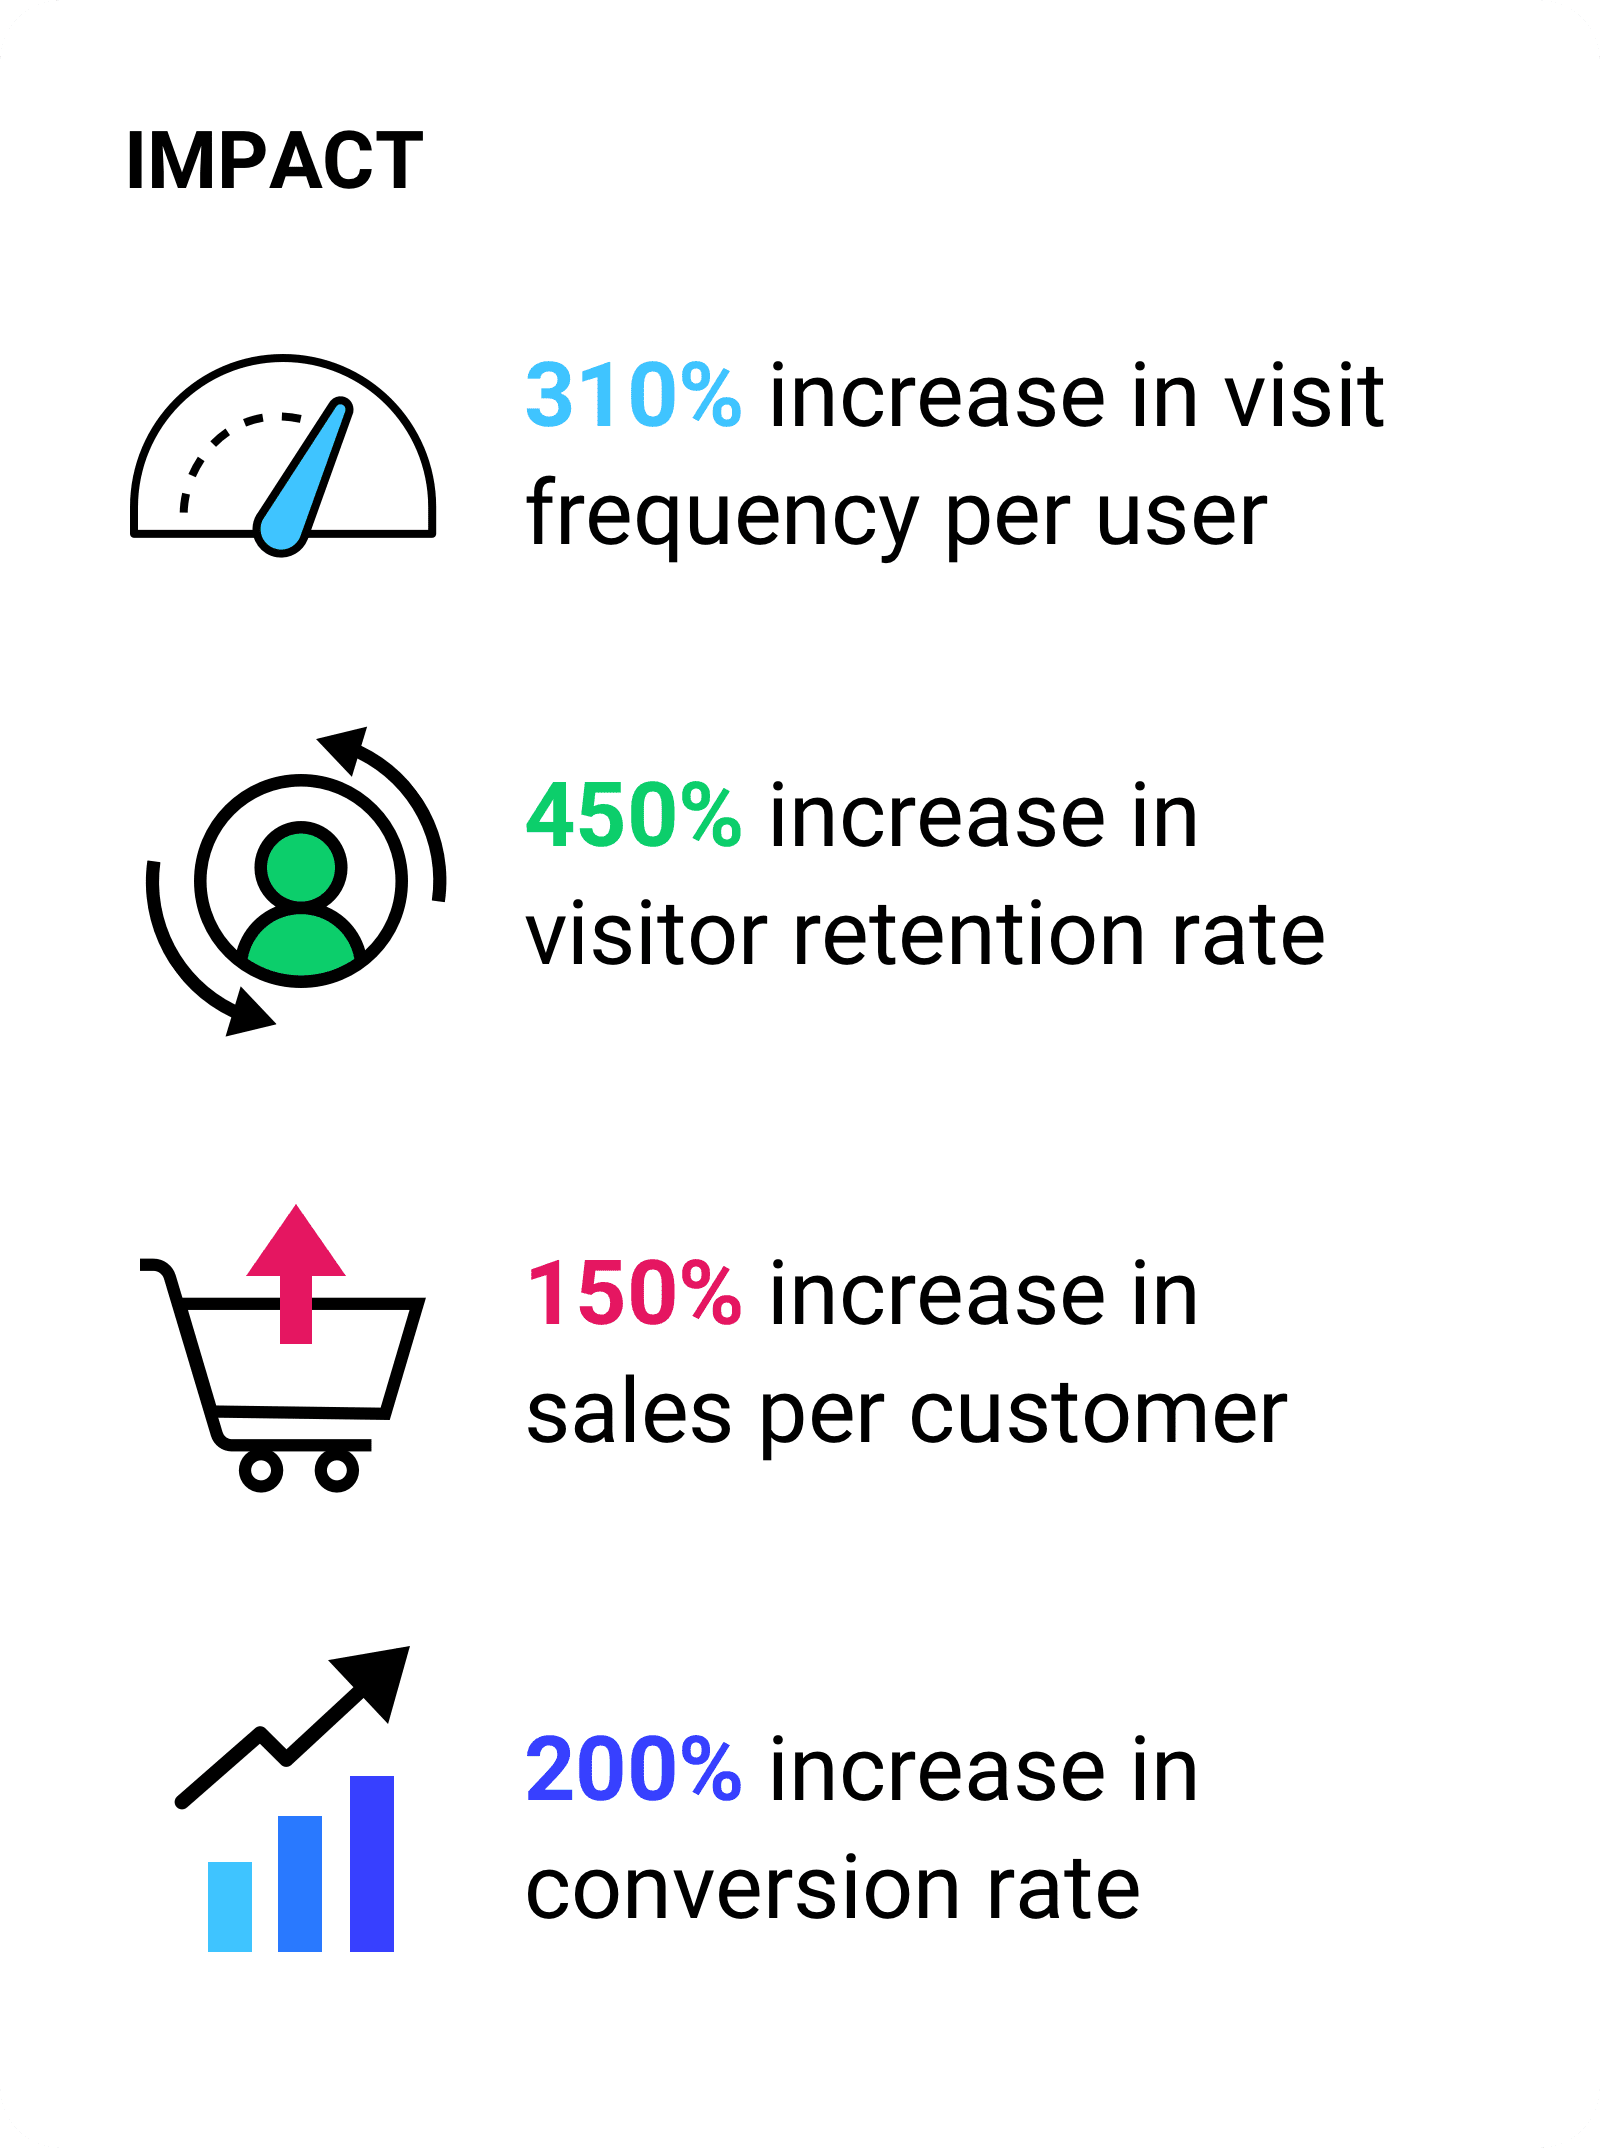 Wzrost częstotliwości wizyt na użytkownika o 310%.  Wzrost współczynnika utrzymania użytkowników o 450%. Wzrost sprzedaży o 150% na klienta oraz wzrost współczynnika konwersji o 200%.